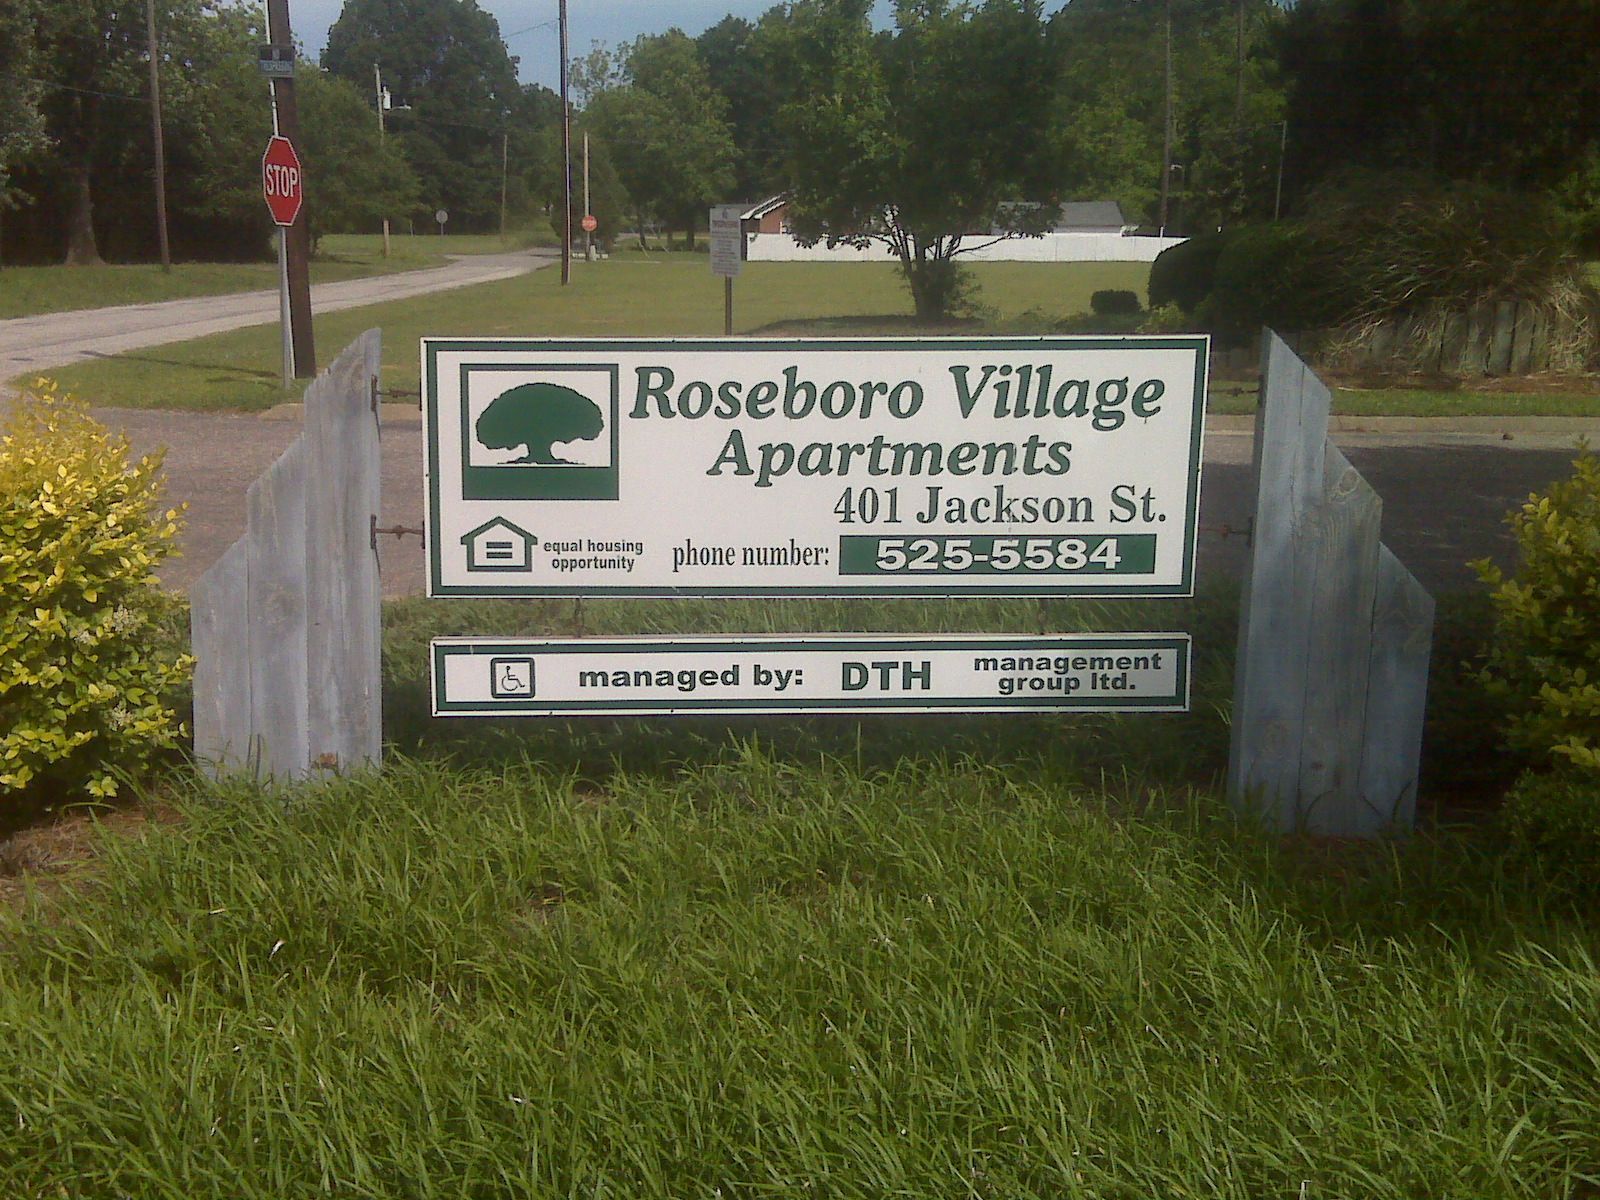 Roseboro Village